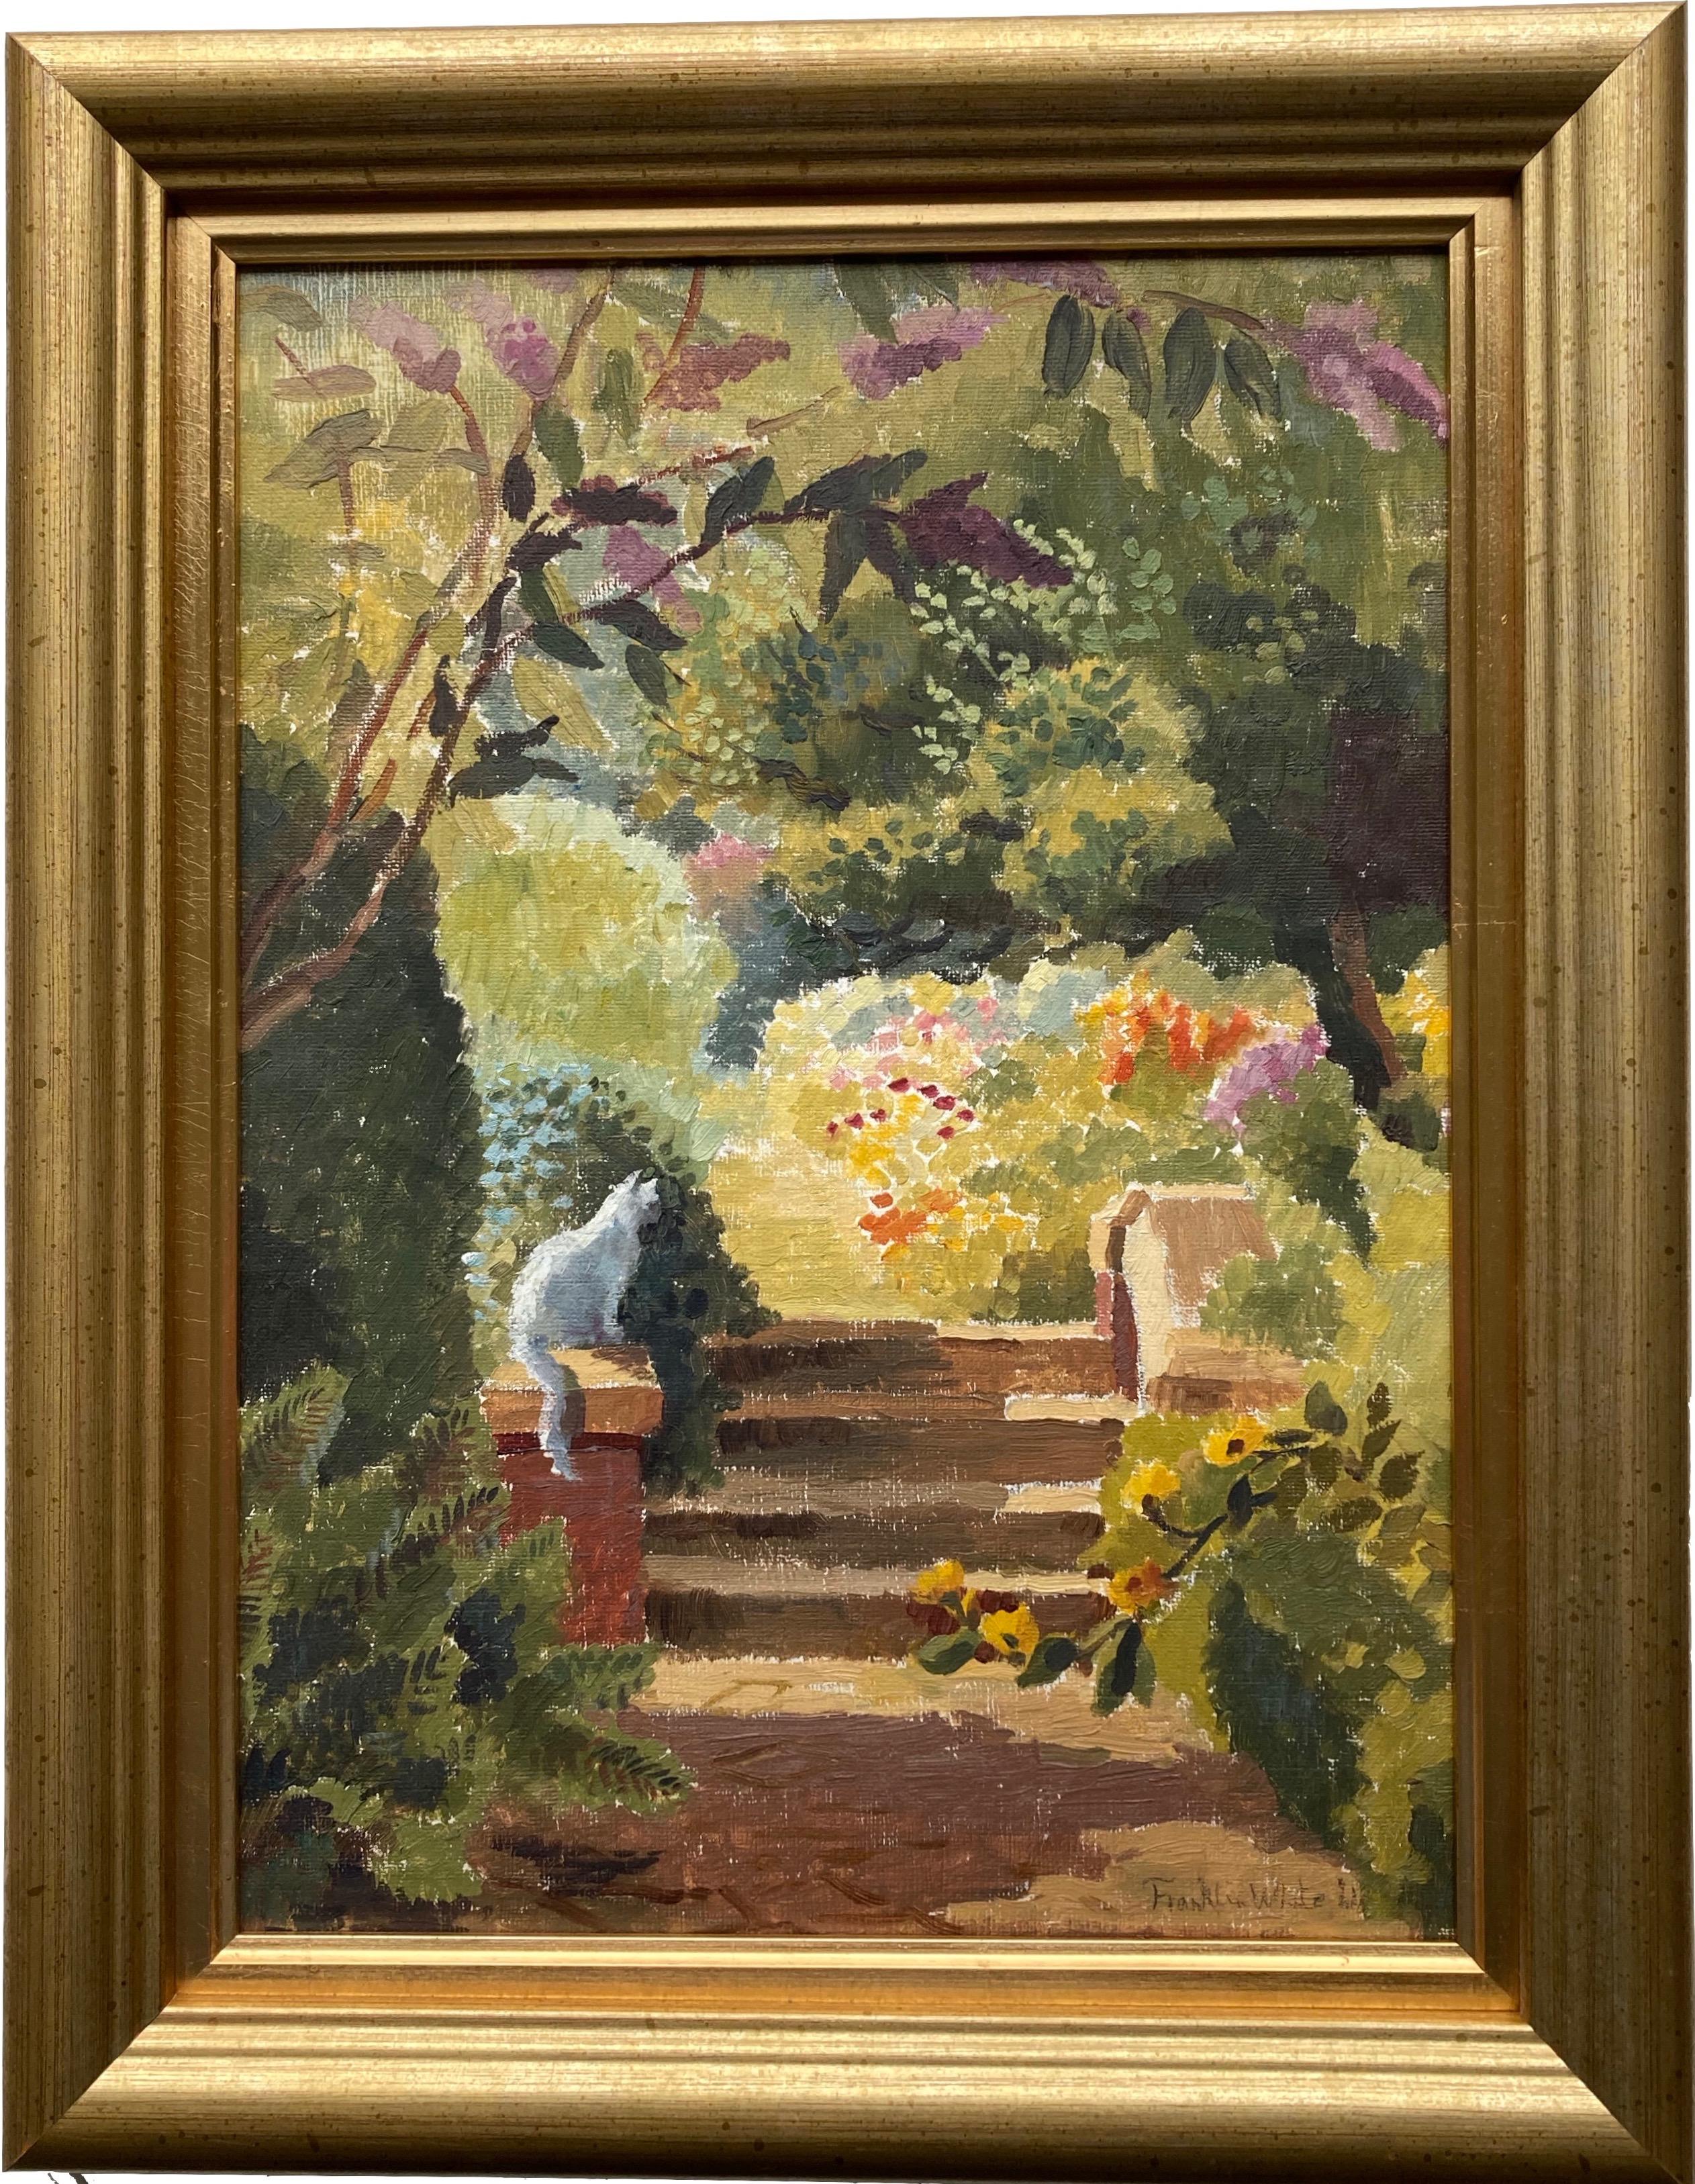 Franklin White, scène impressionniste britannique australienne d'un chat dans une cour